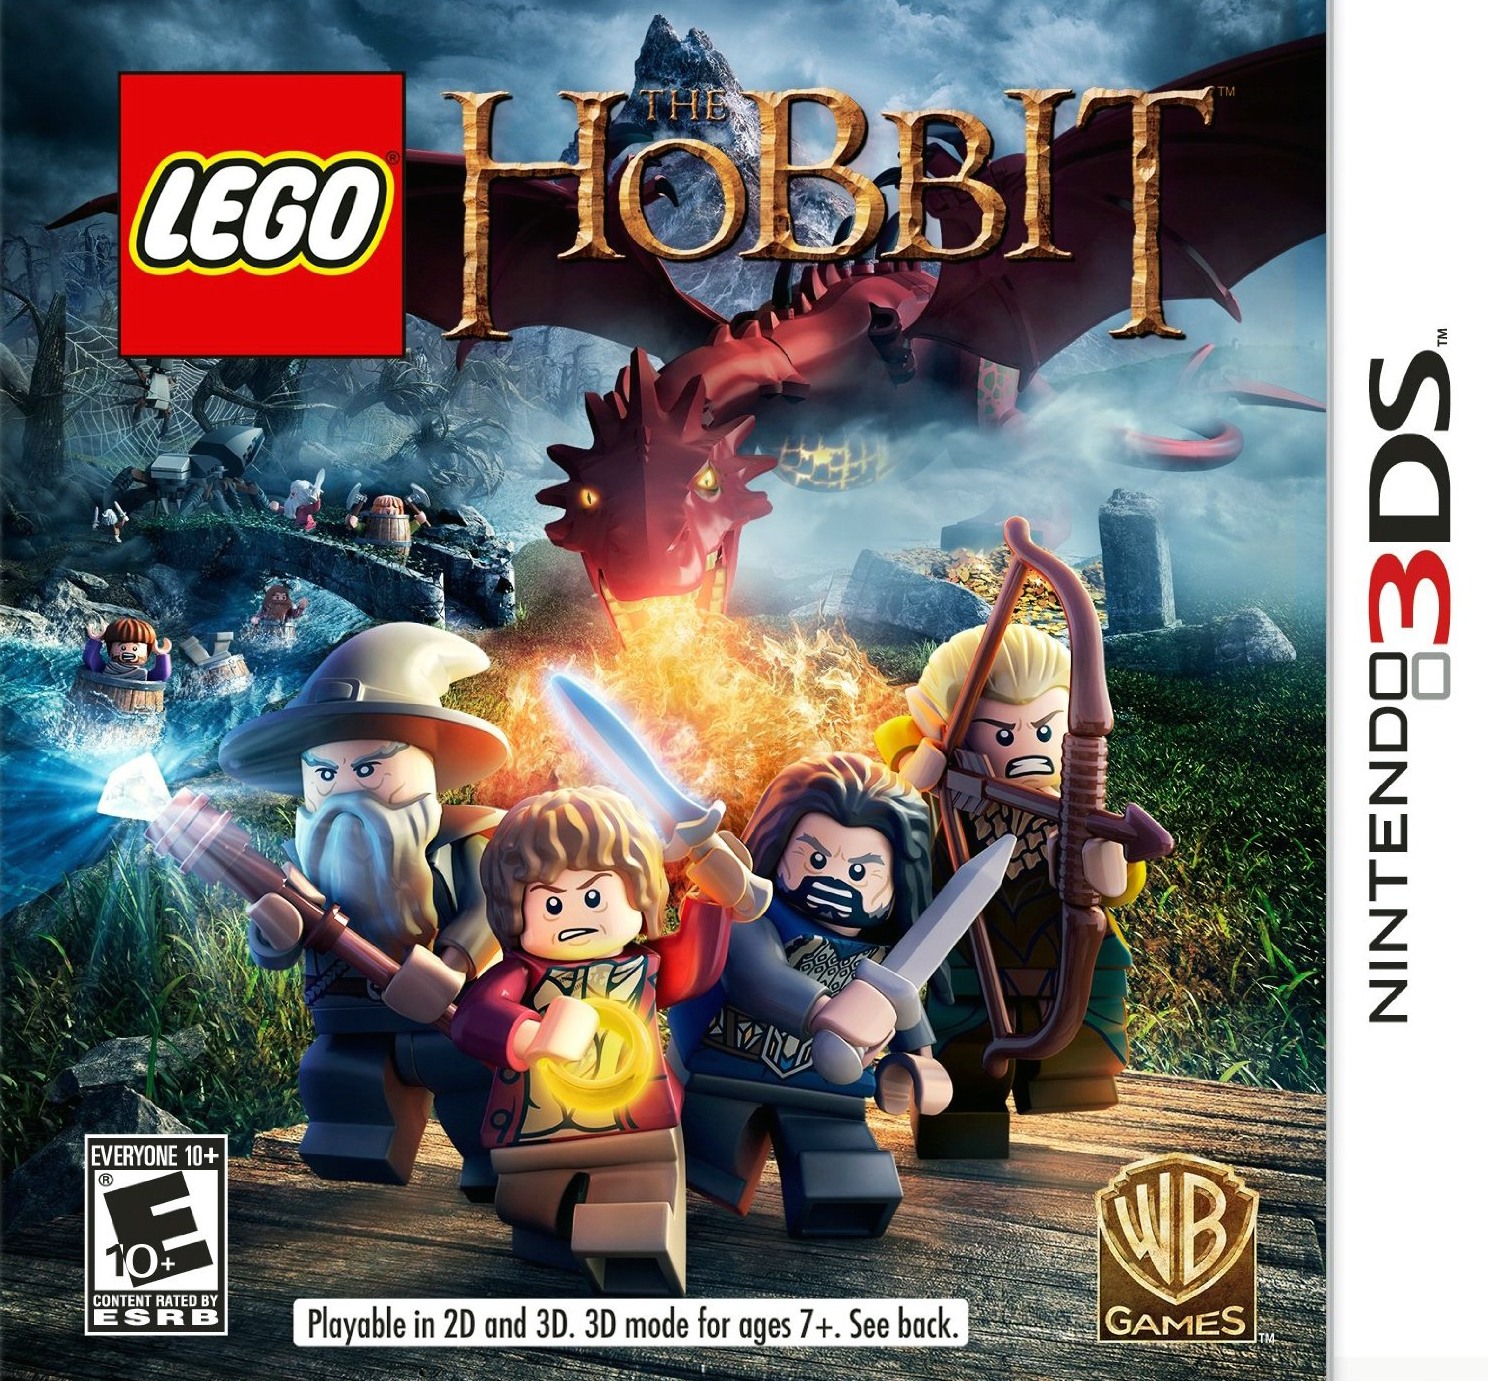 LEGO The Hobbit #19